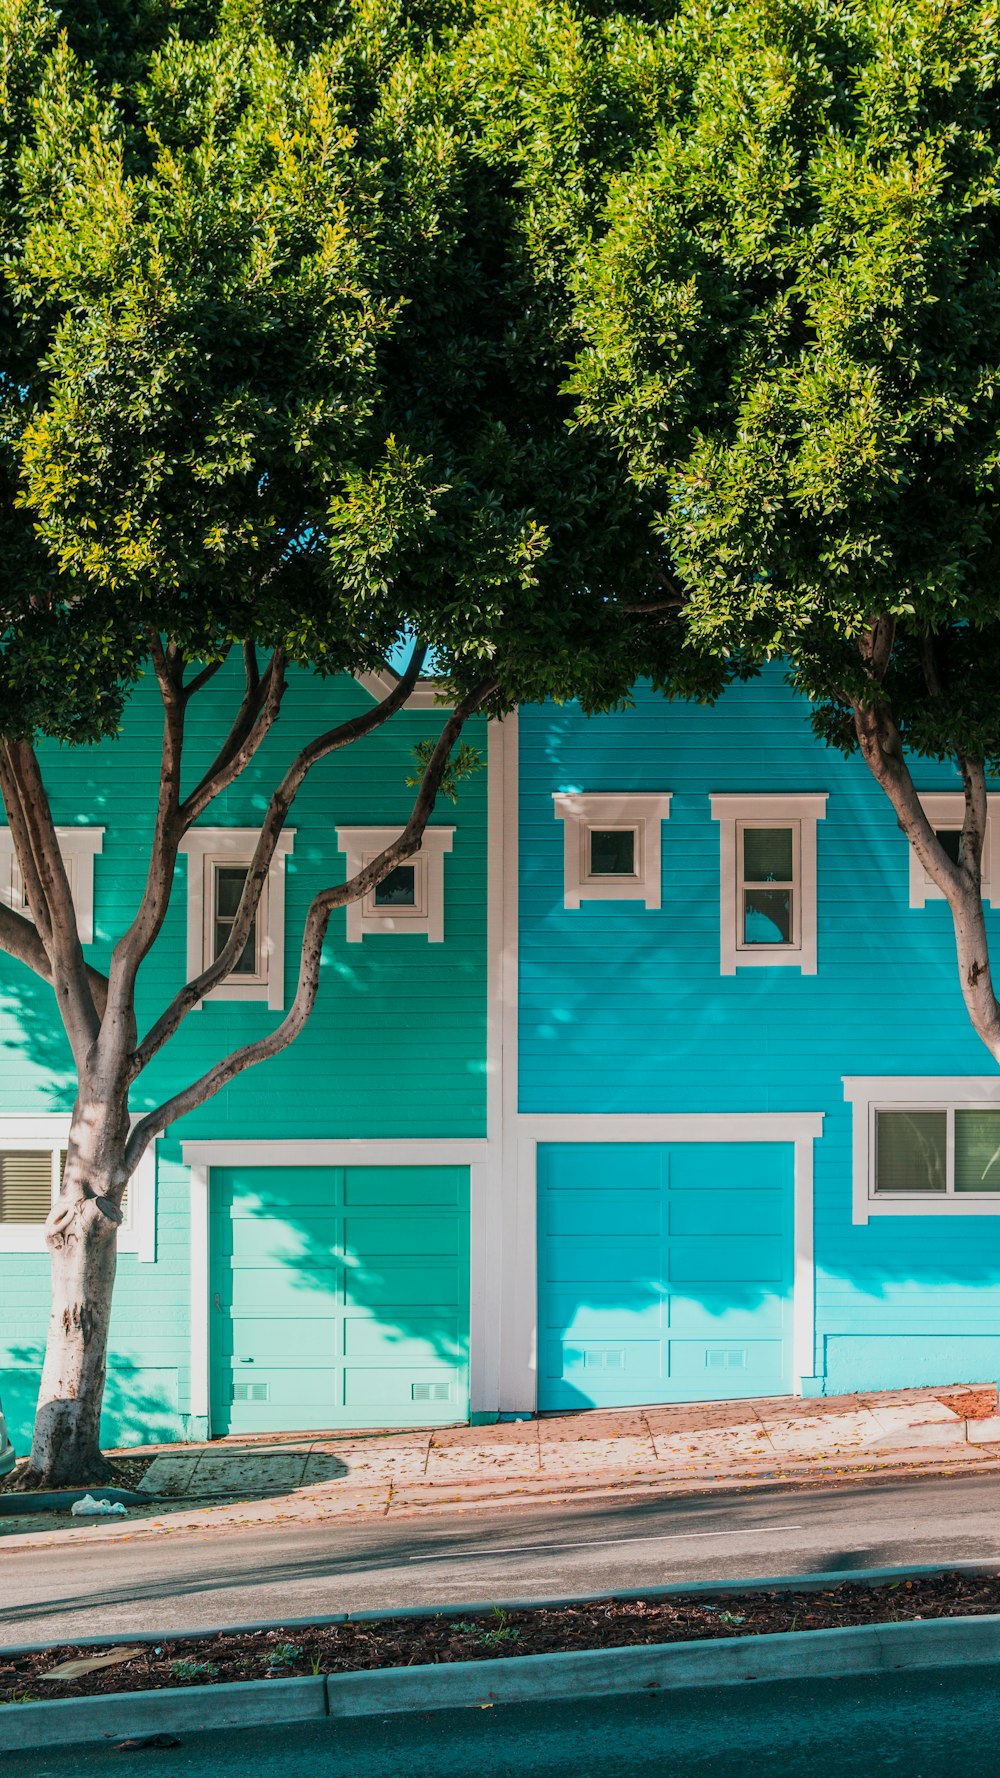 Casas verdes e azuis ao lado de árvores na calçada